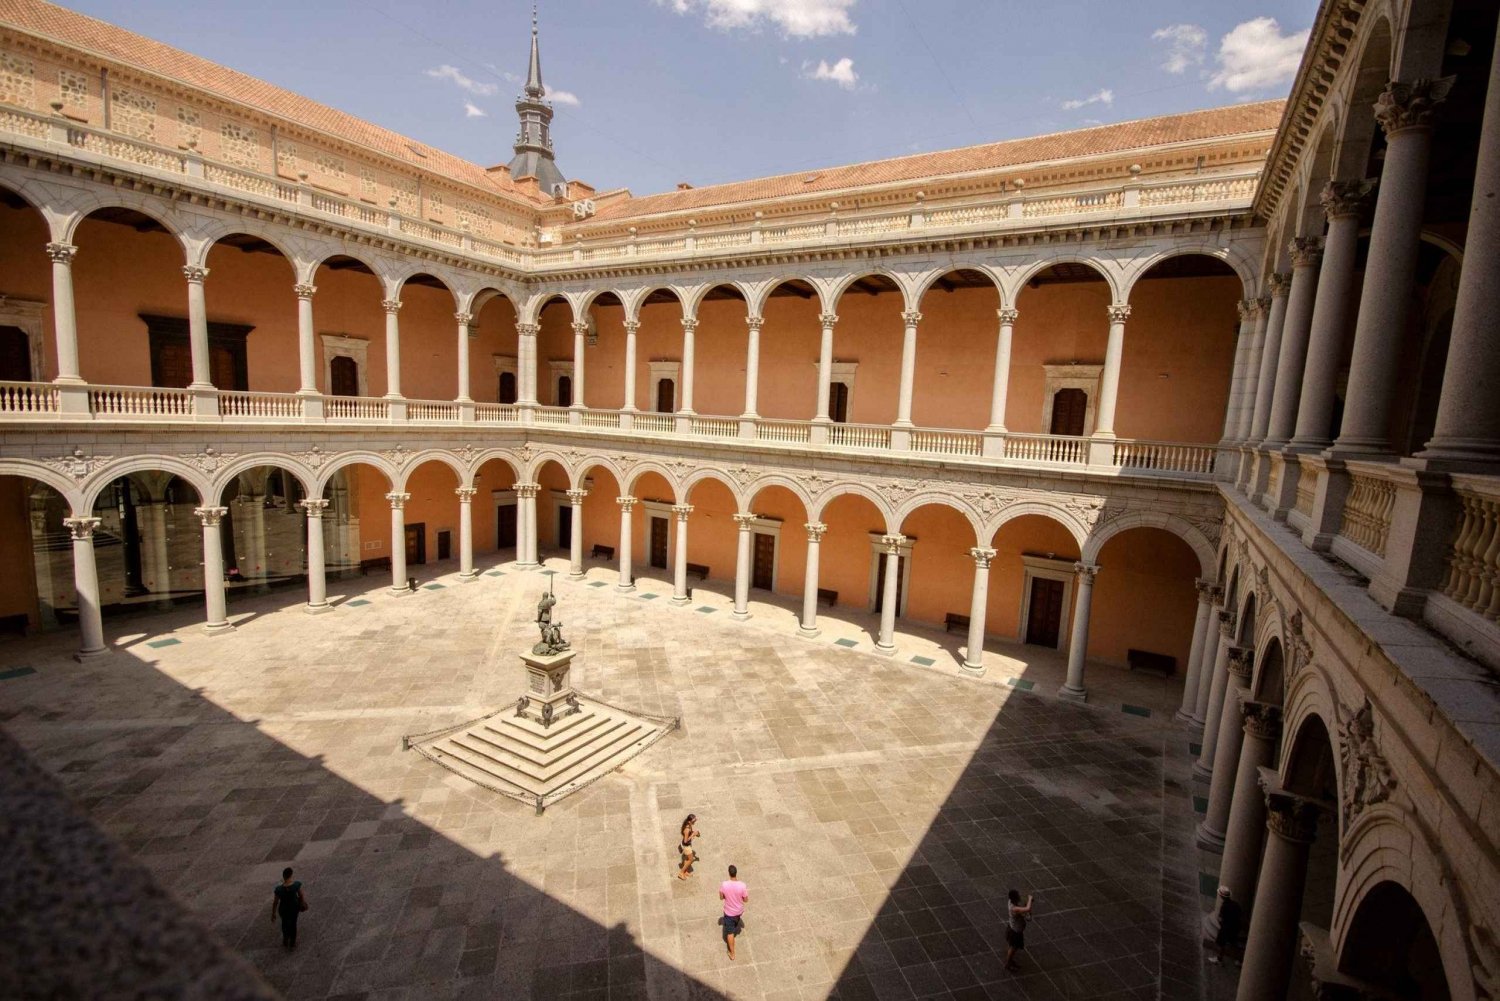 De Madri: Excursão de 1 dia a Toledo com visita à Catedral